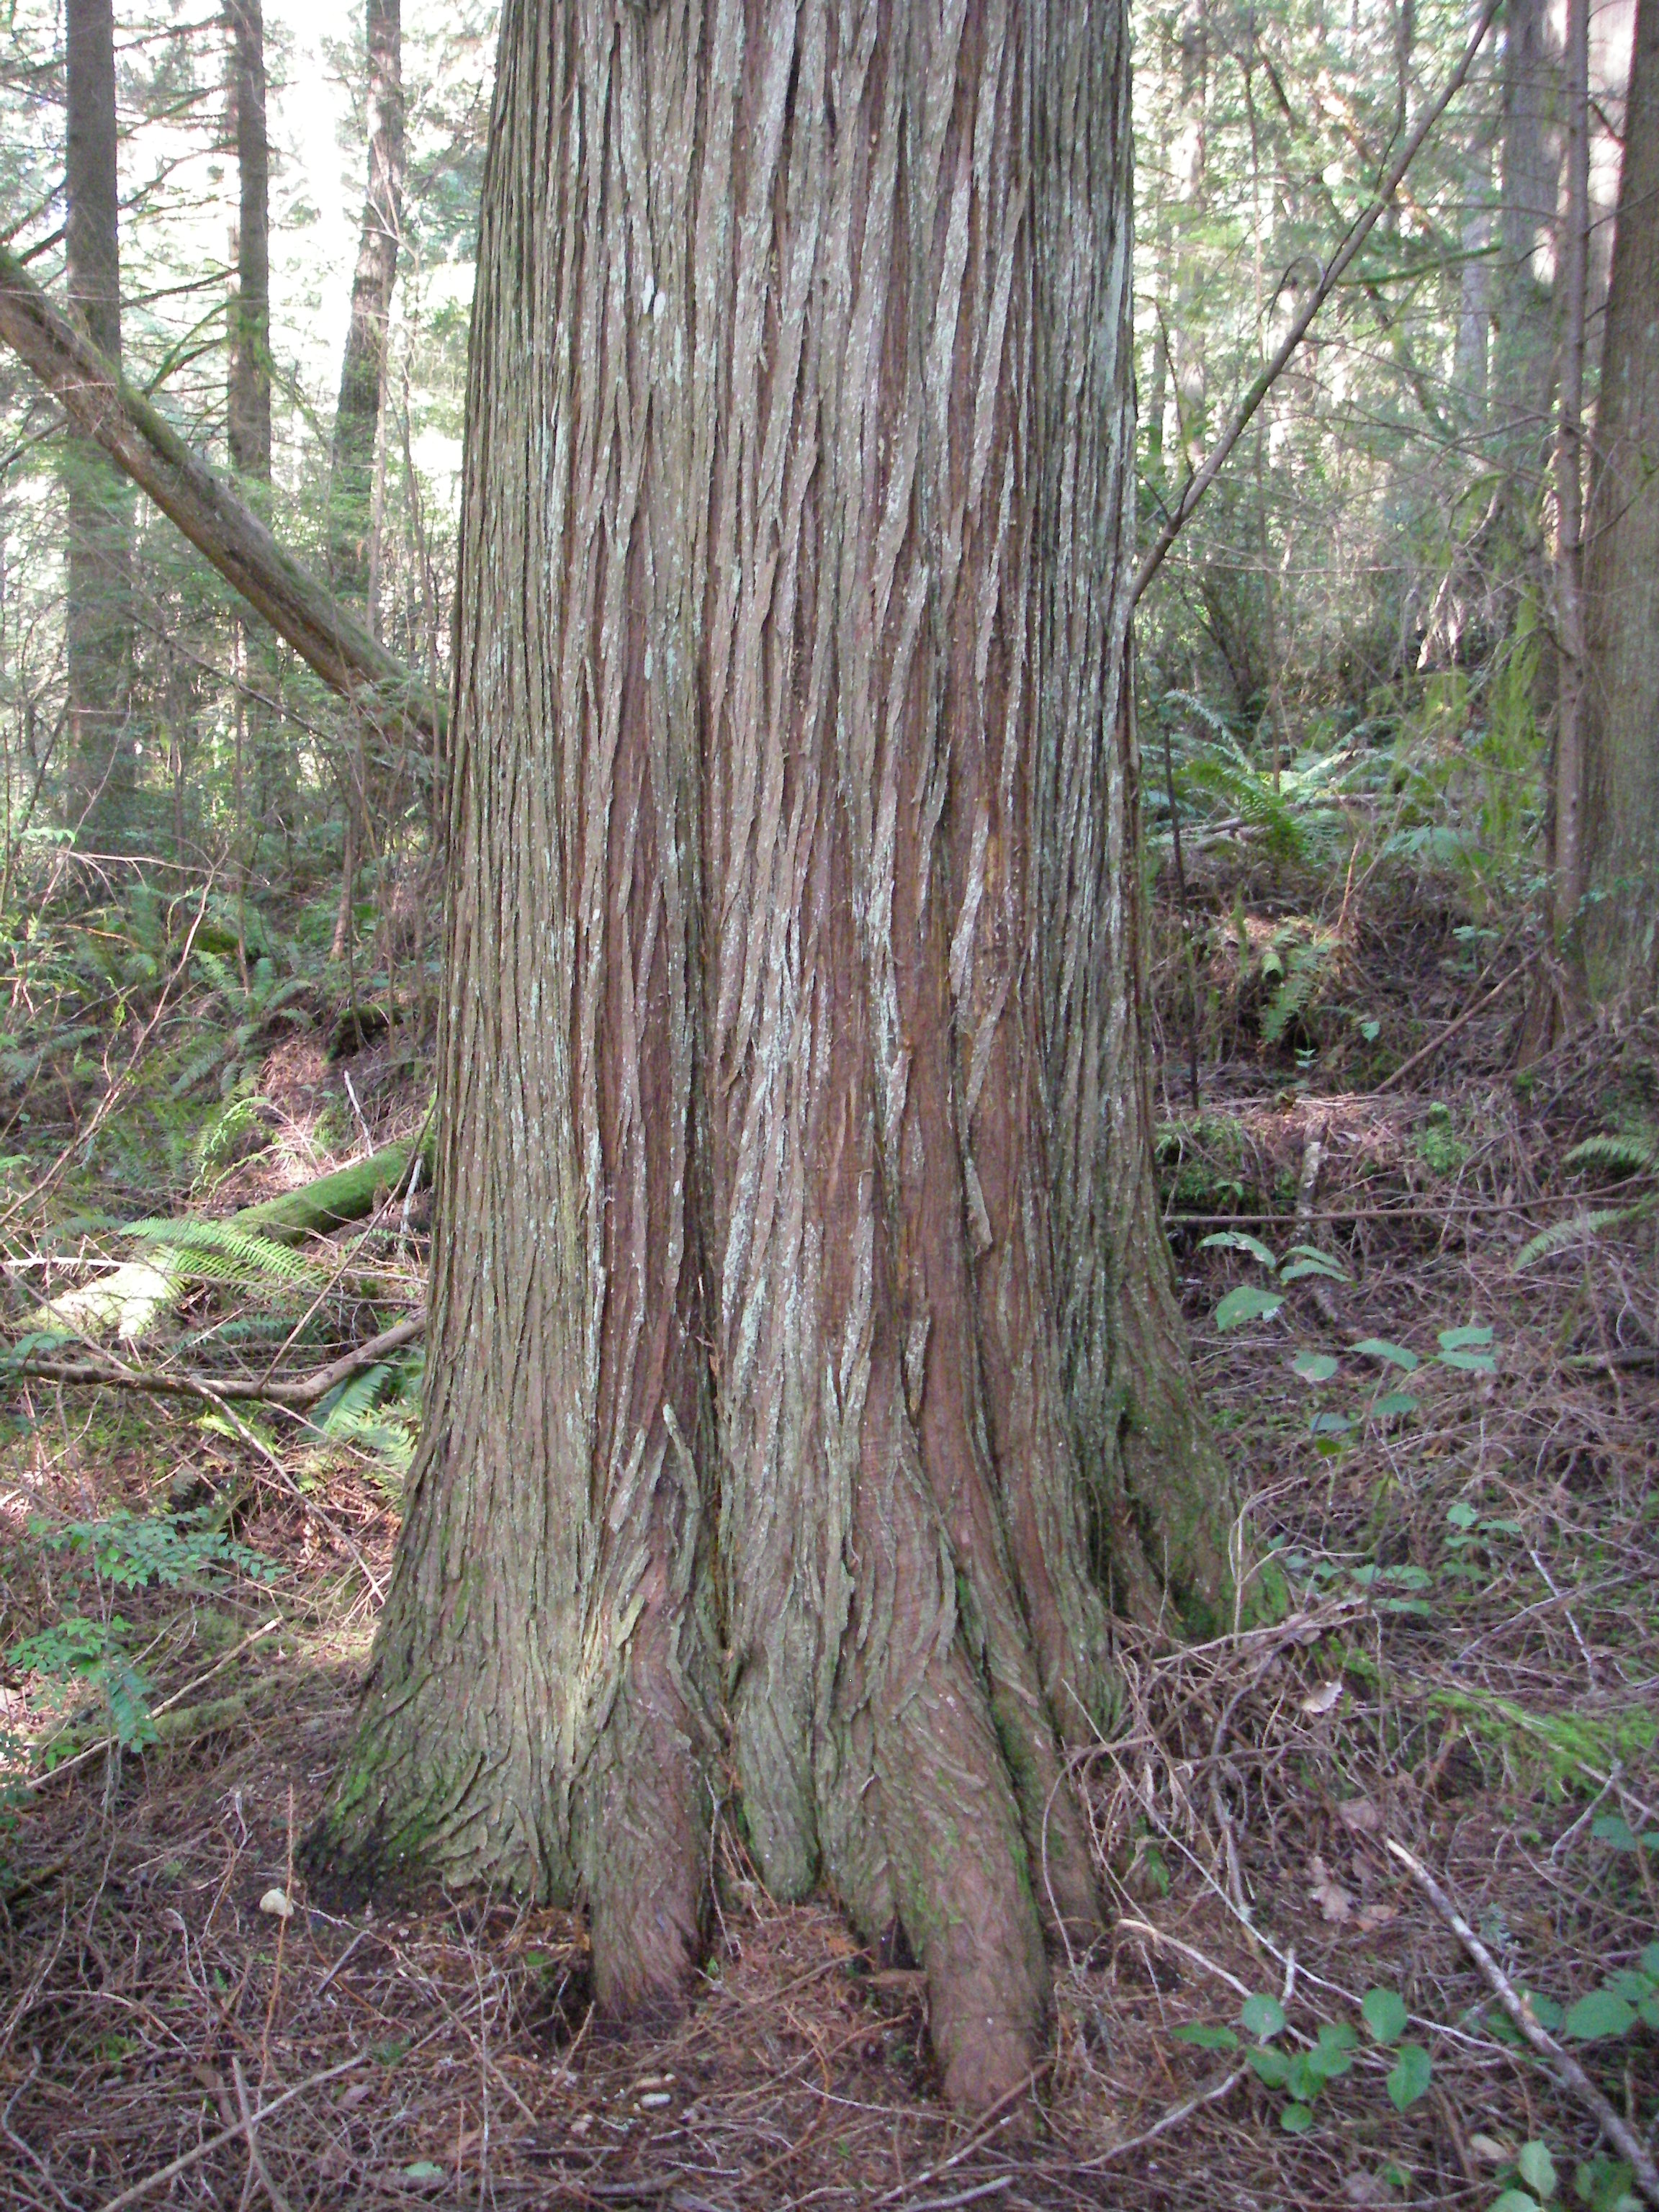 western red cedar